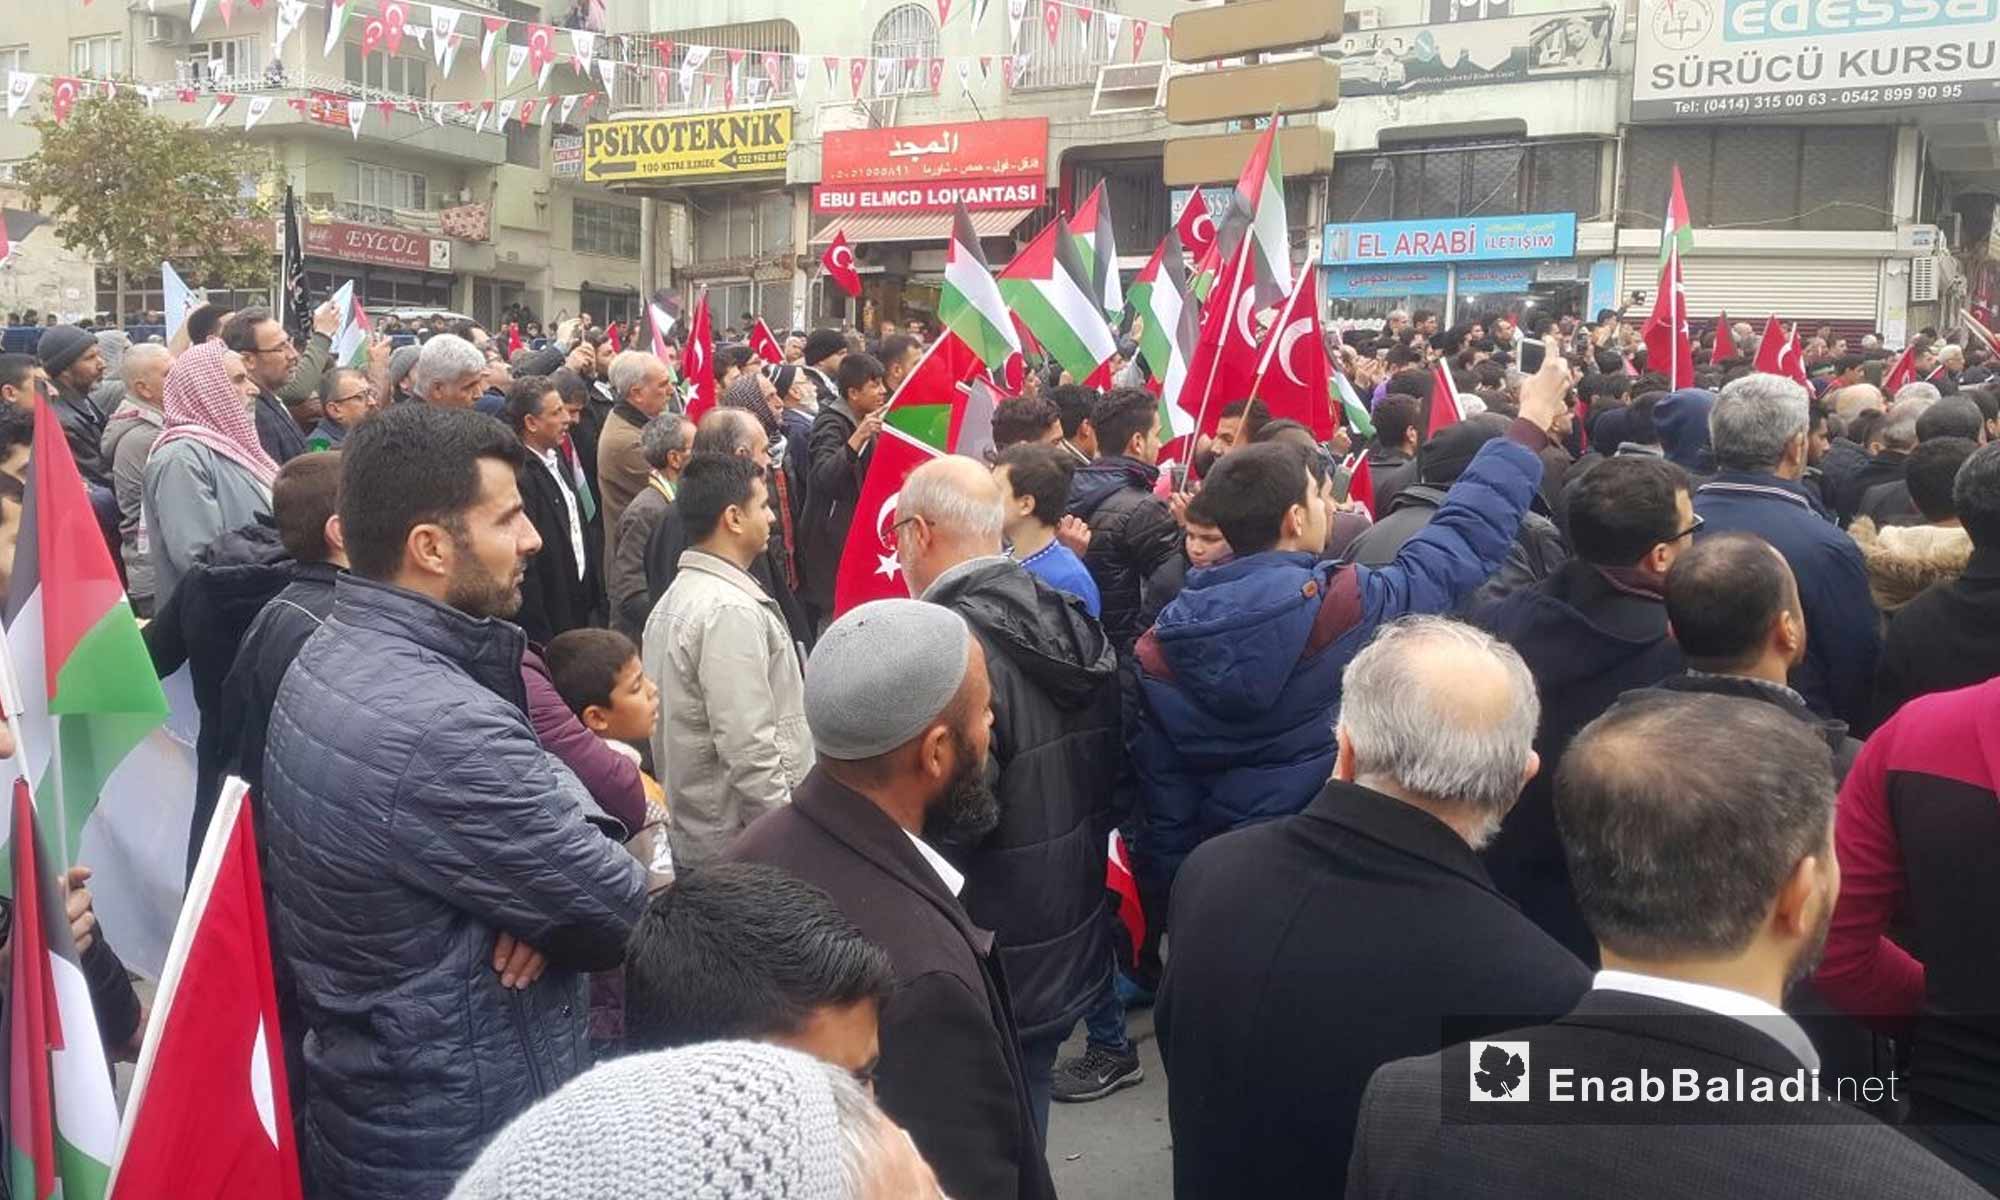  مظاهرة خرج بها أتراك وسوريون في أورفة التركية يرفضون قرار ترامب حول القدس - 24 كانون الأول 2017 (عنب بلدي)